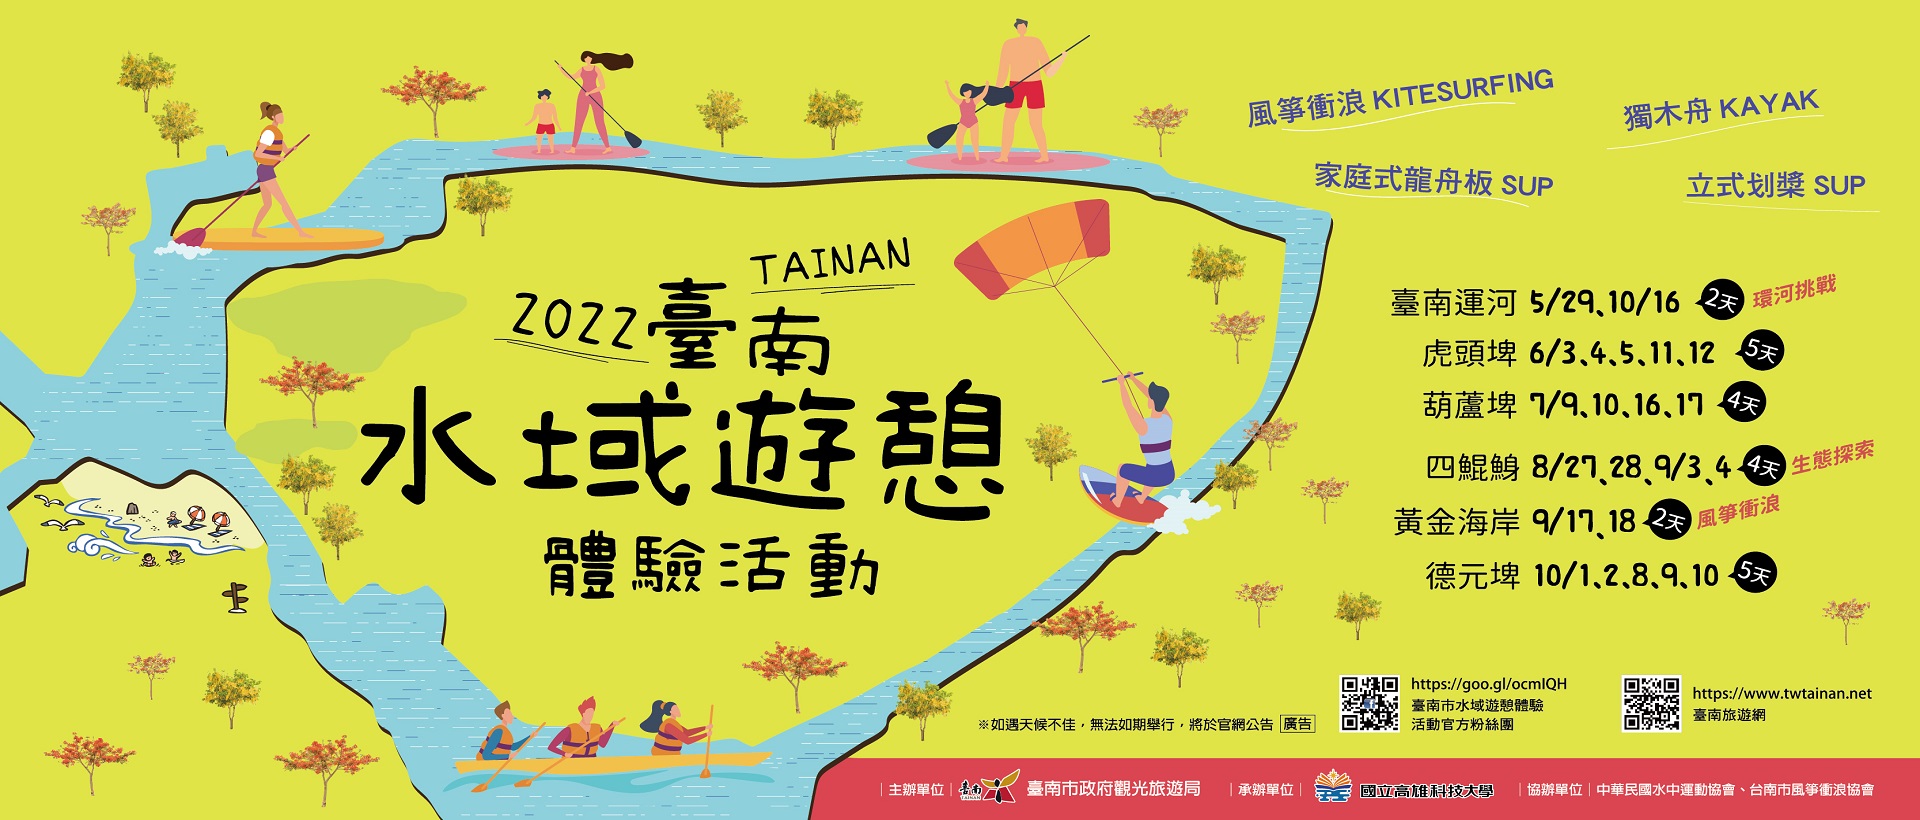 2022臺南水域遊憩體驗活動